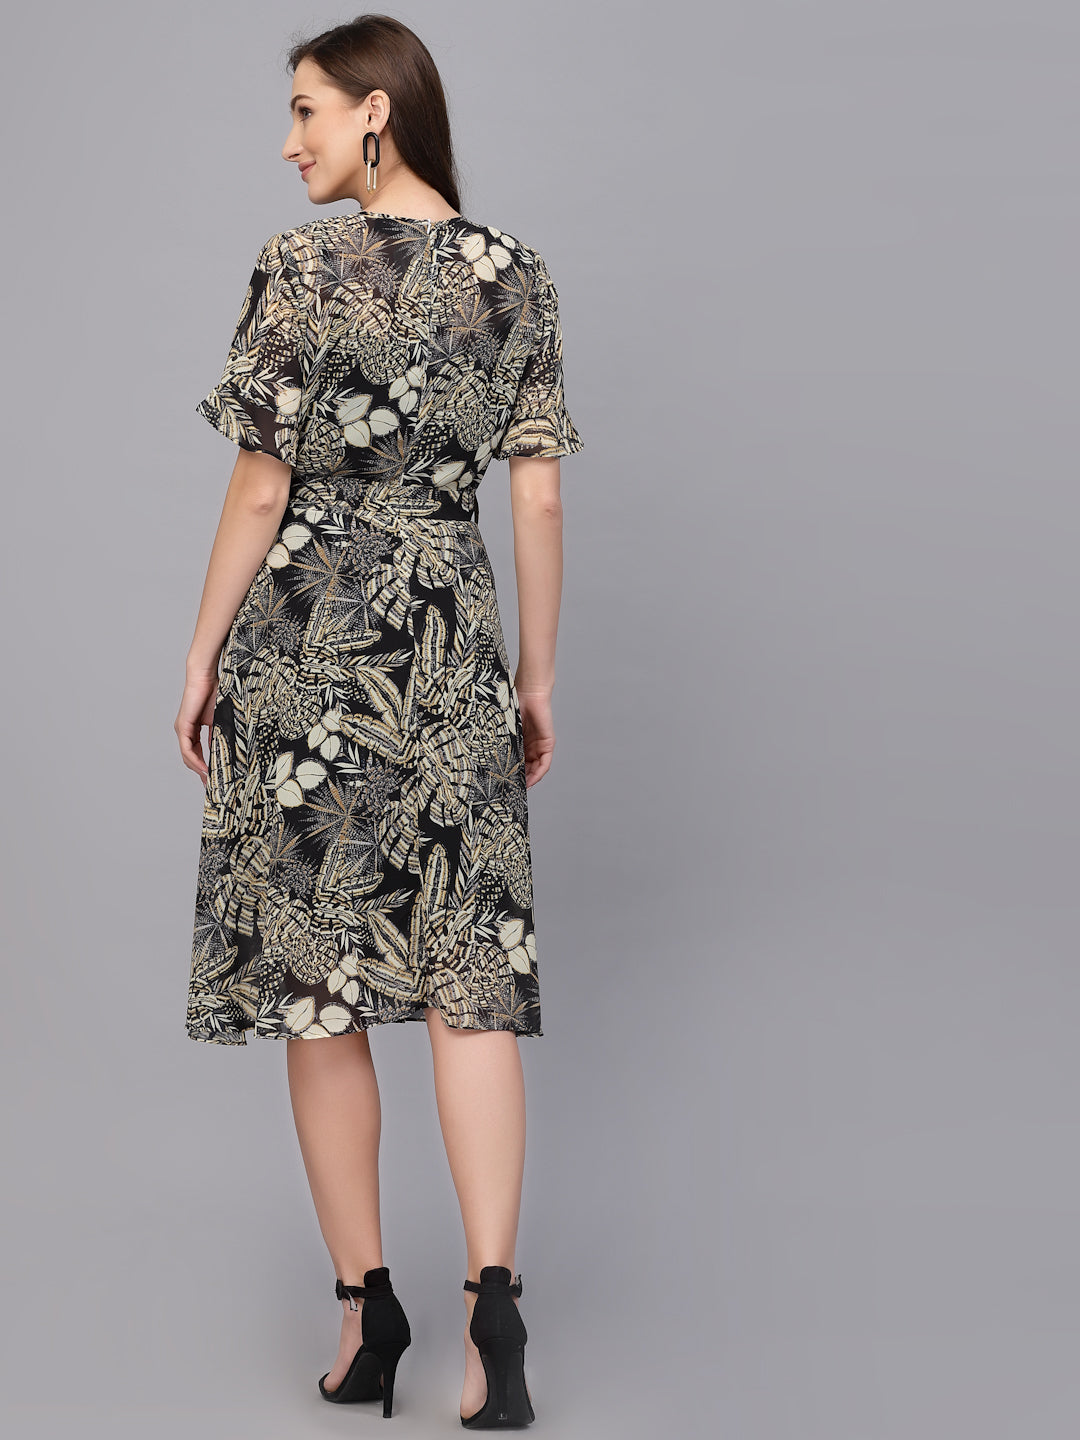 Shop floral dresses for ladies | Georgette Orange Floral Dress | Ordinaree